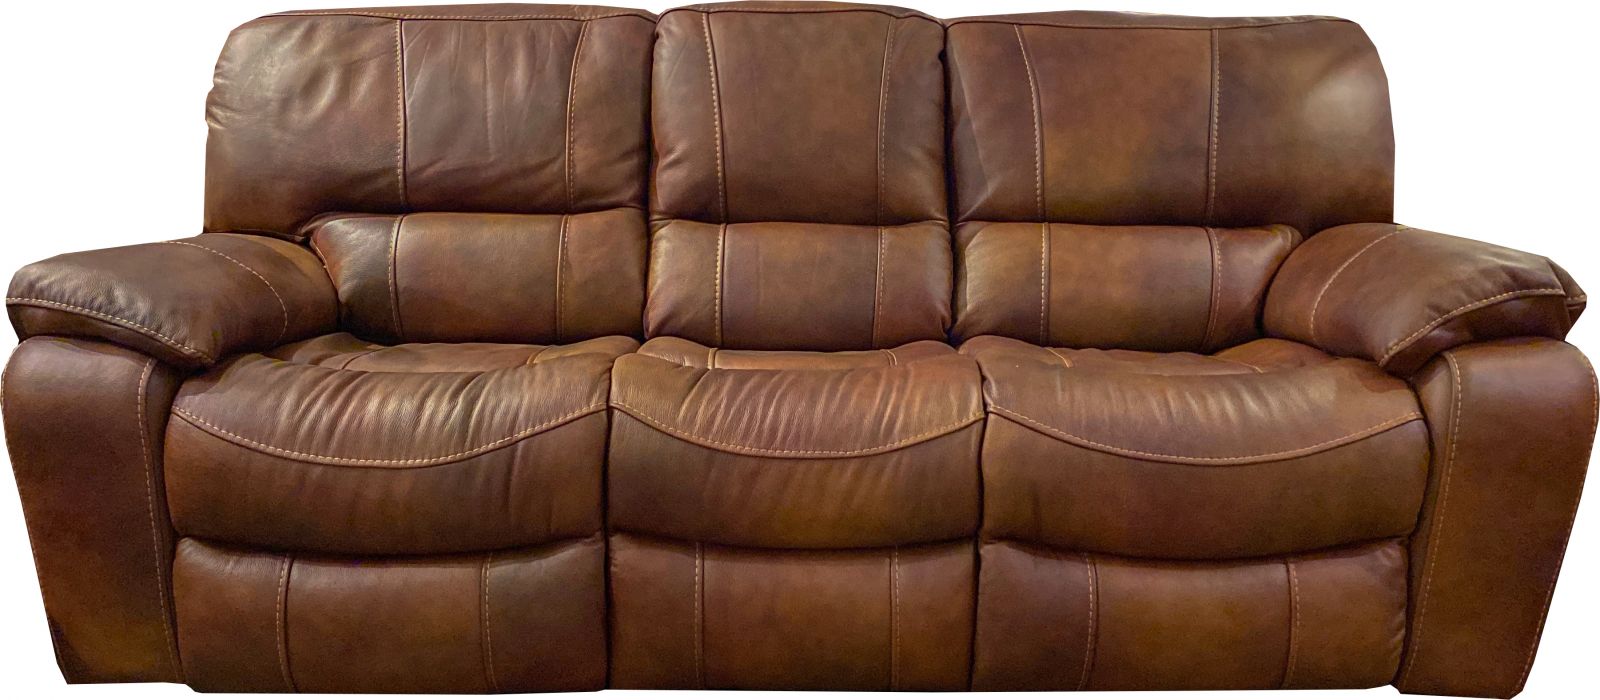 fine furniture leather sofa